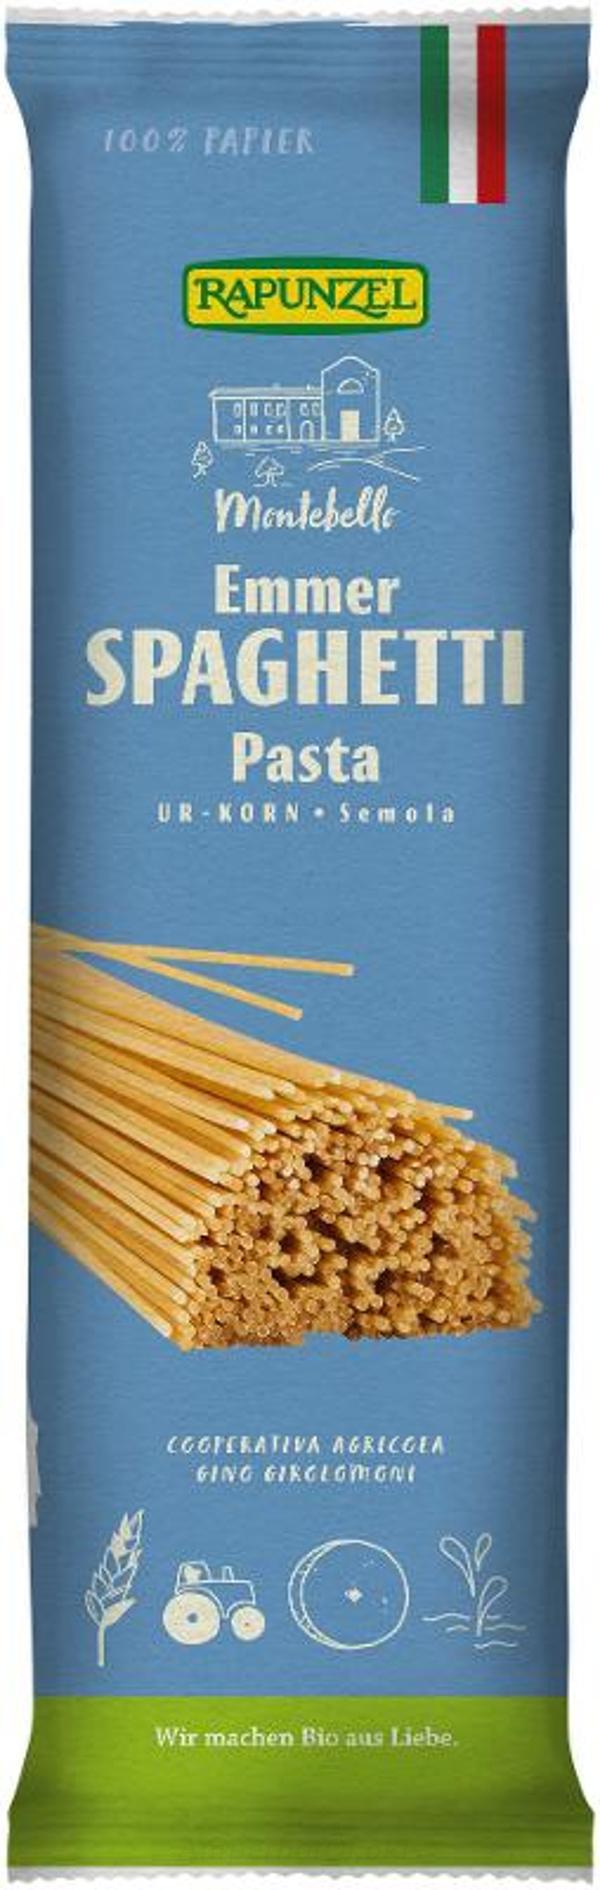 Produktfoto zu Emmer-Spaghetti 500 g